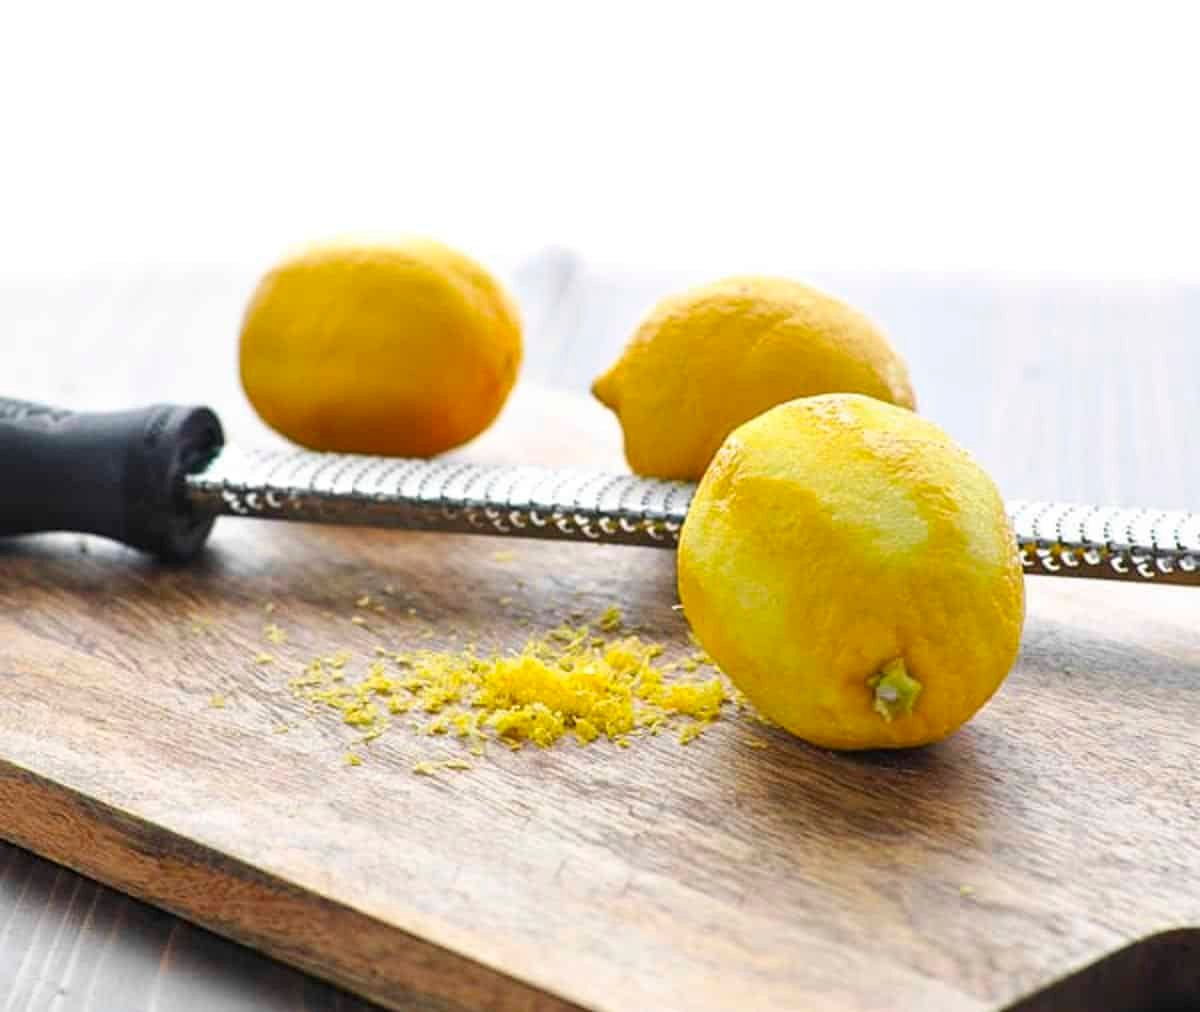 Zesting lemons on a cutting board.